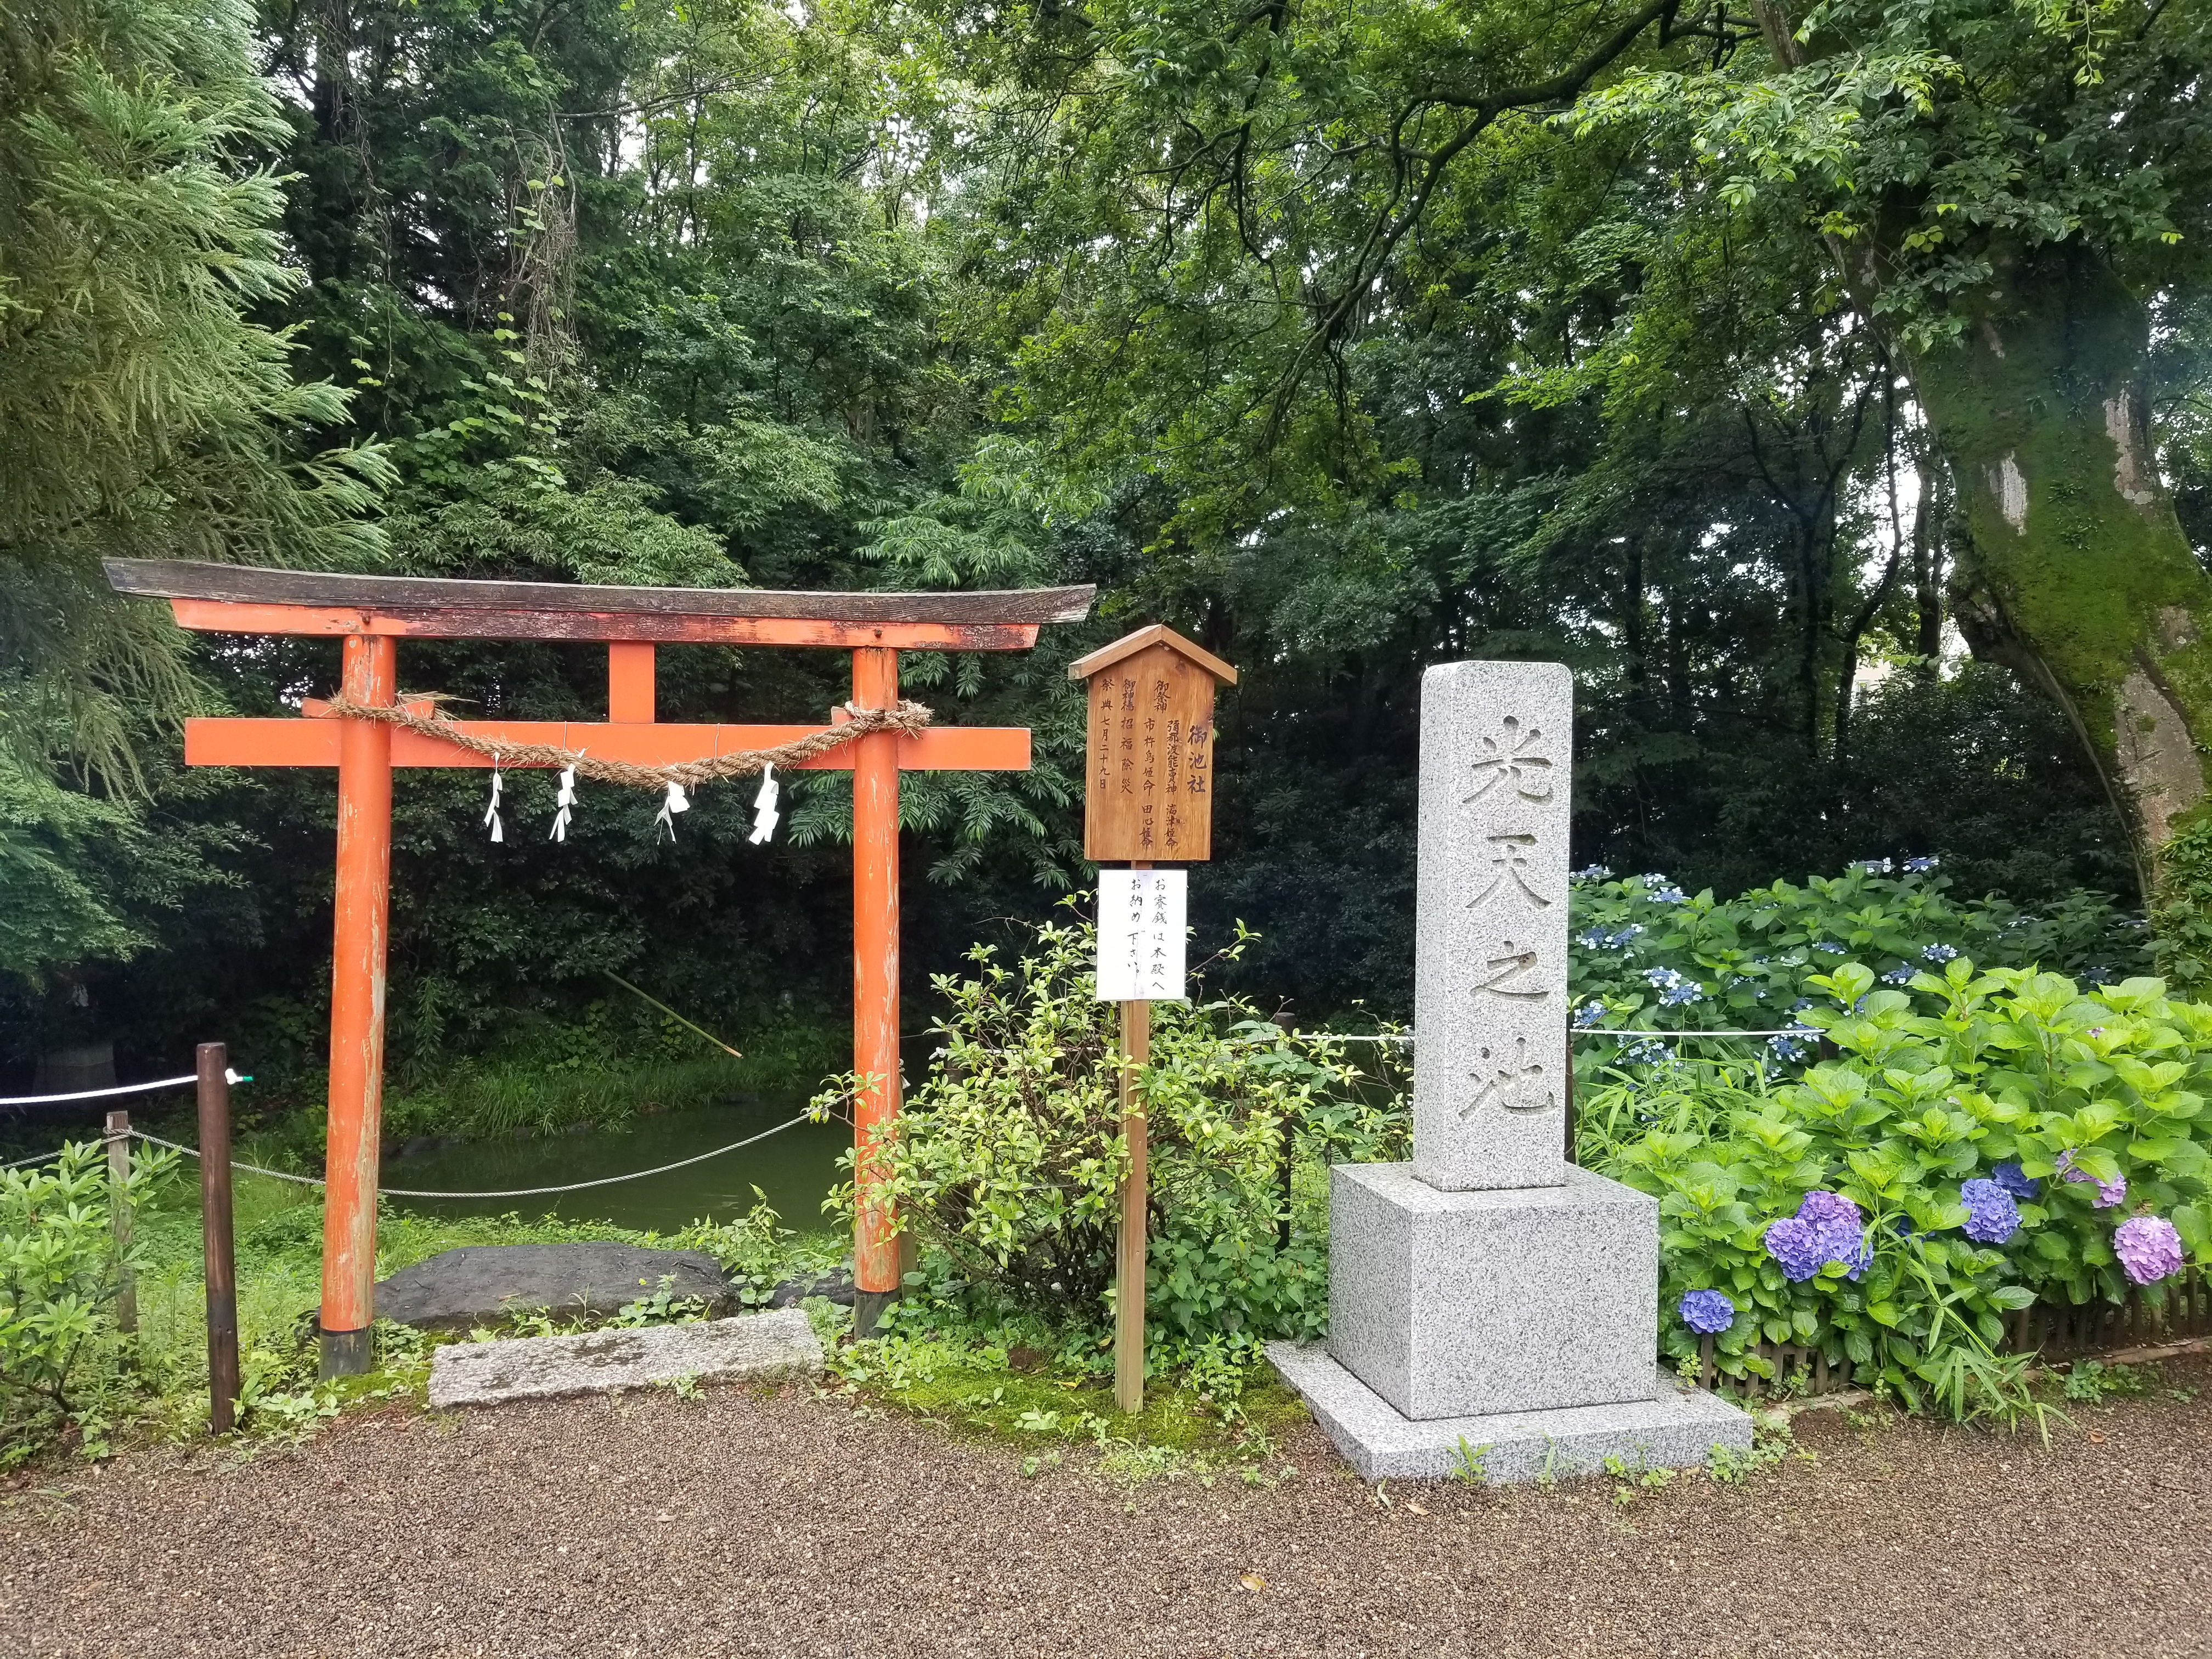 小江戸・川越散策と武蔵国神社巡りバスツアーのおすすめポイント